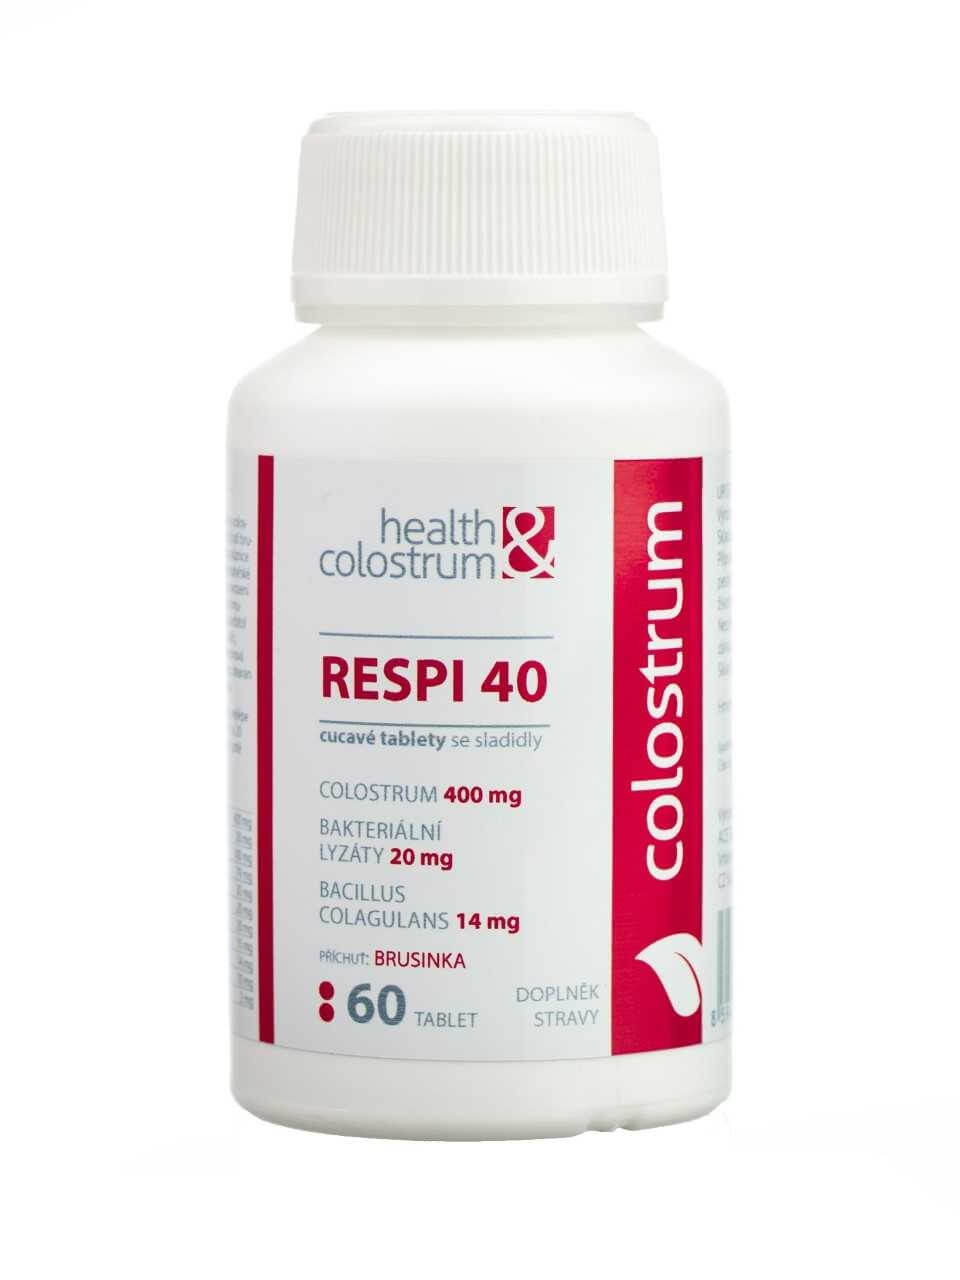 Health&colostrum RESPI 40 (400 mg) + bakteriální lyzáty - příchuť brusinka 60 cucavých tbl.